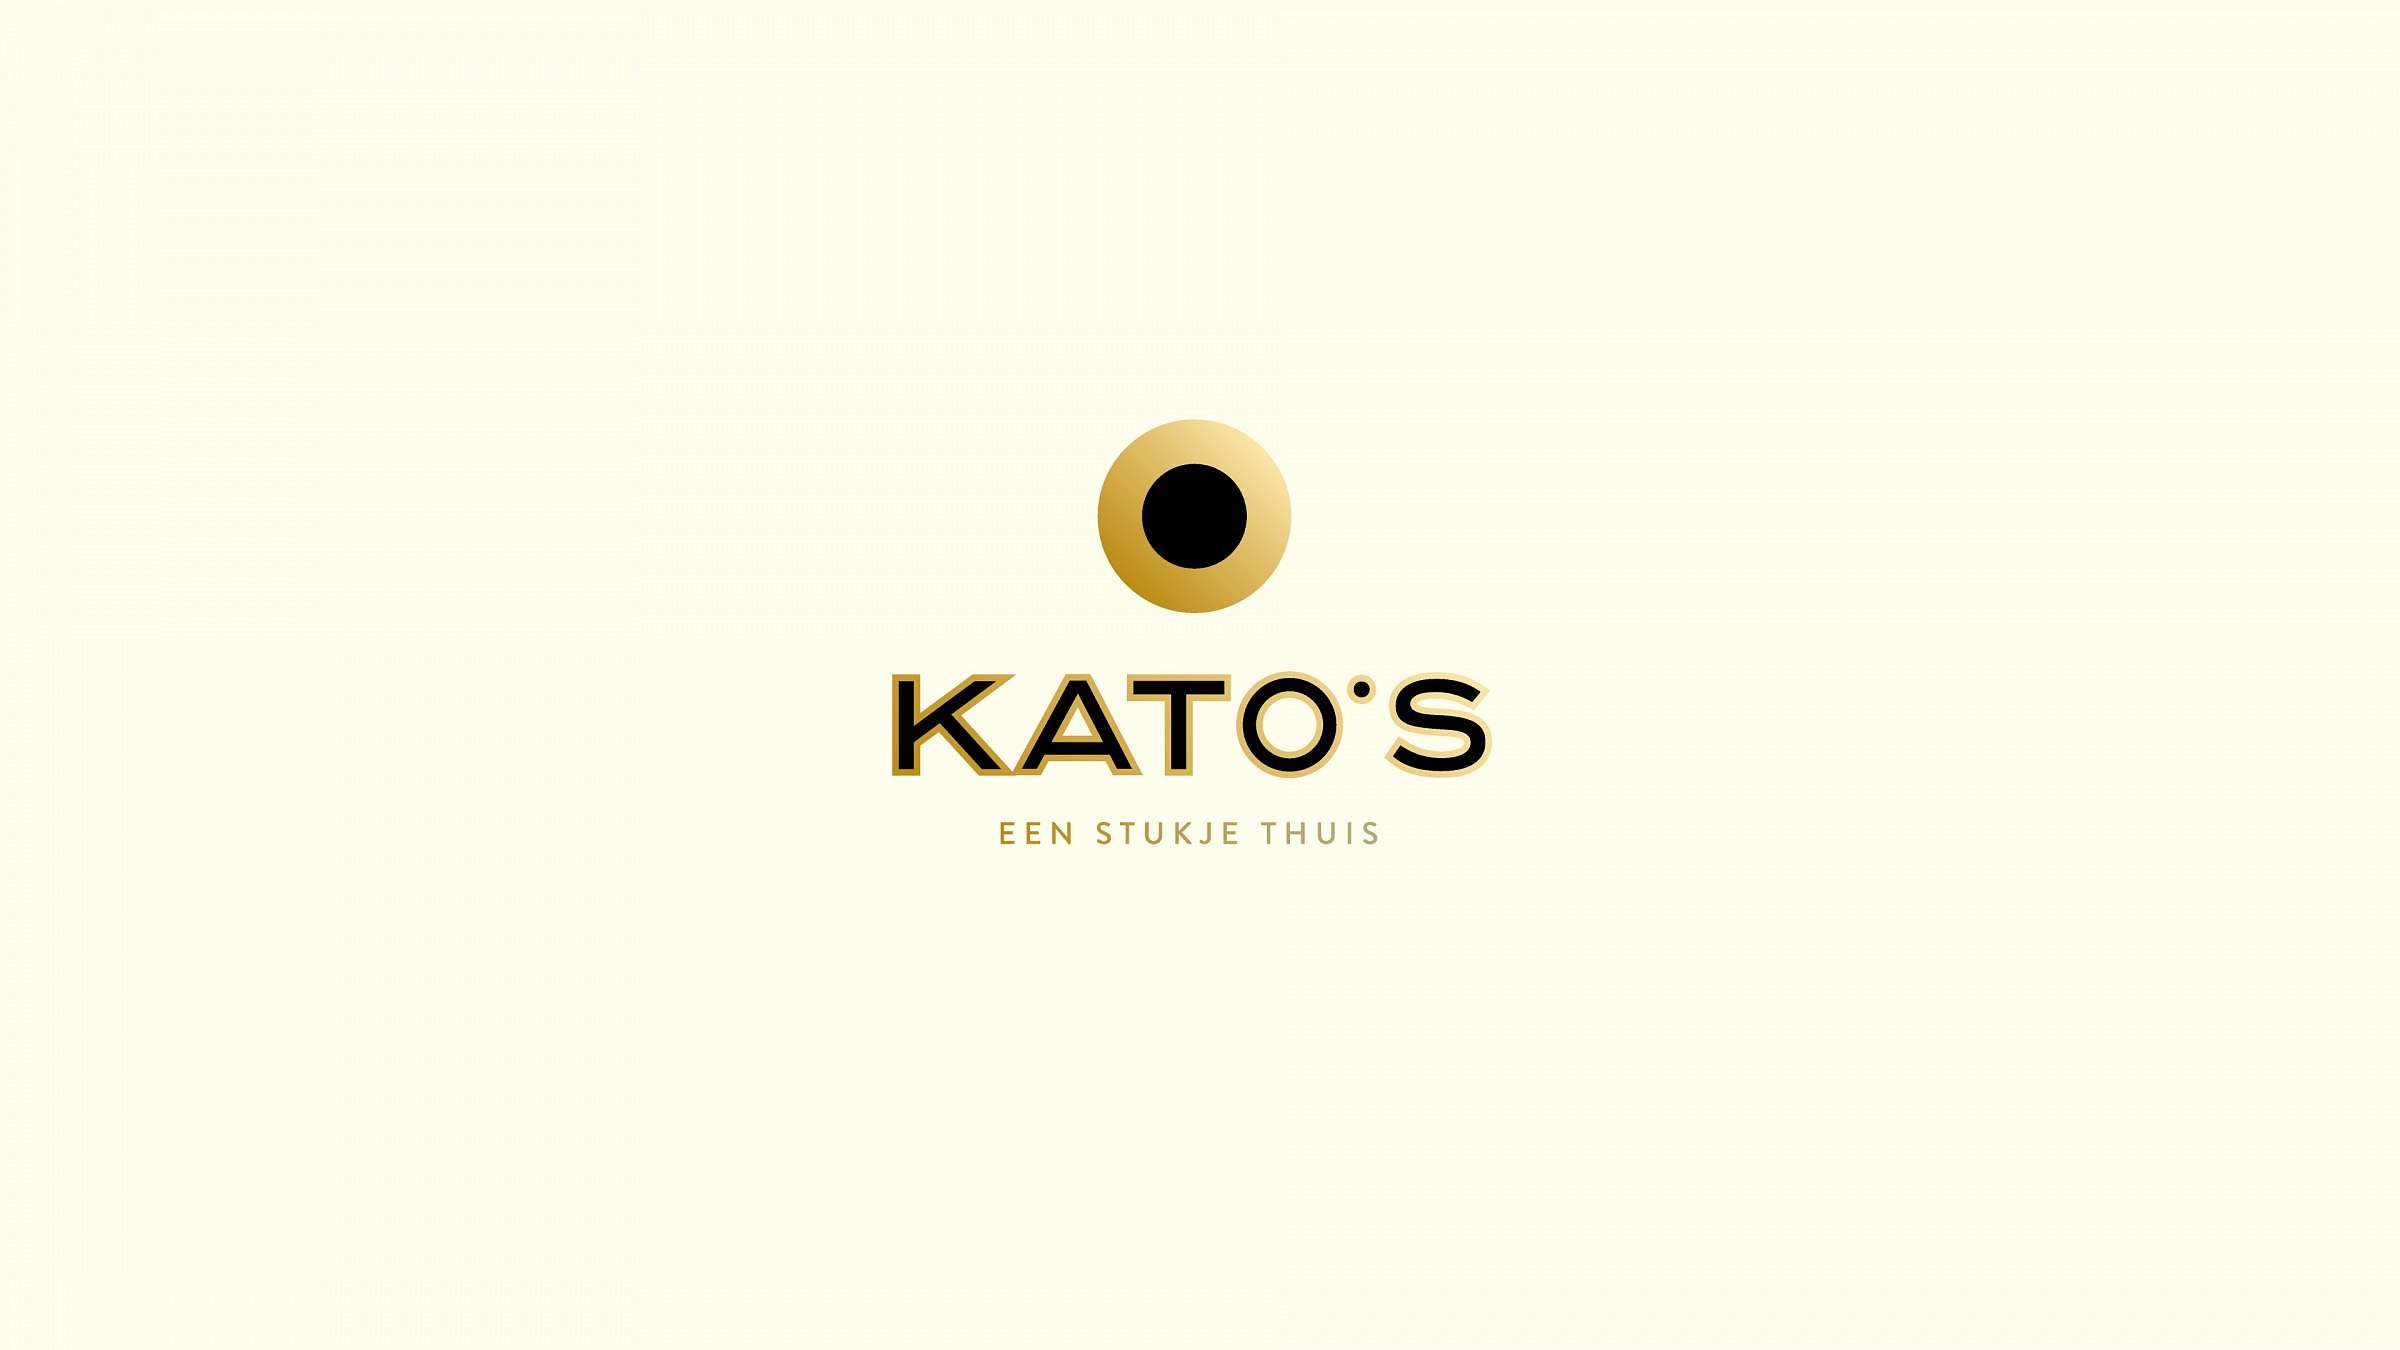 Kato's